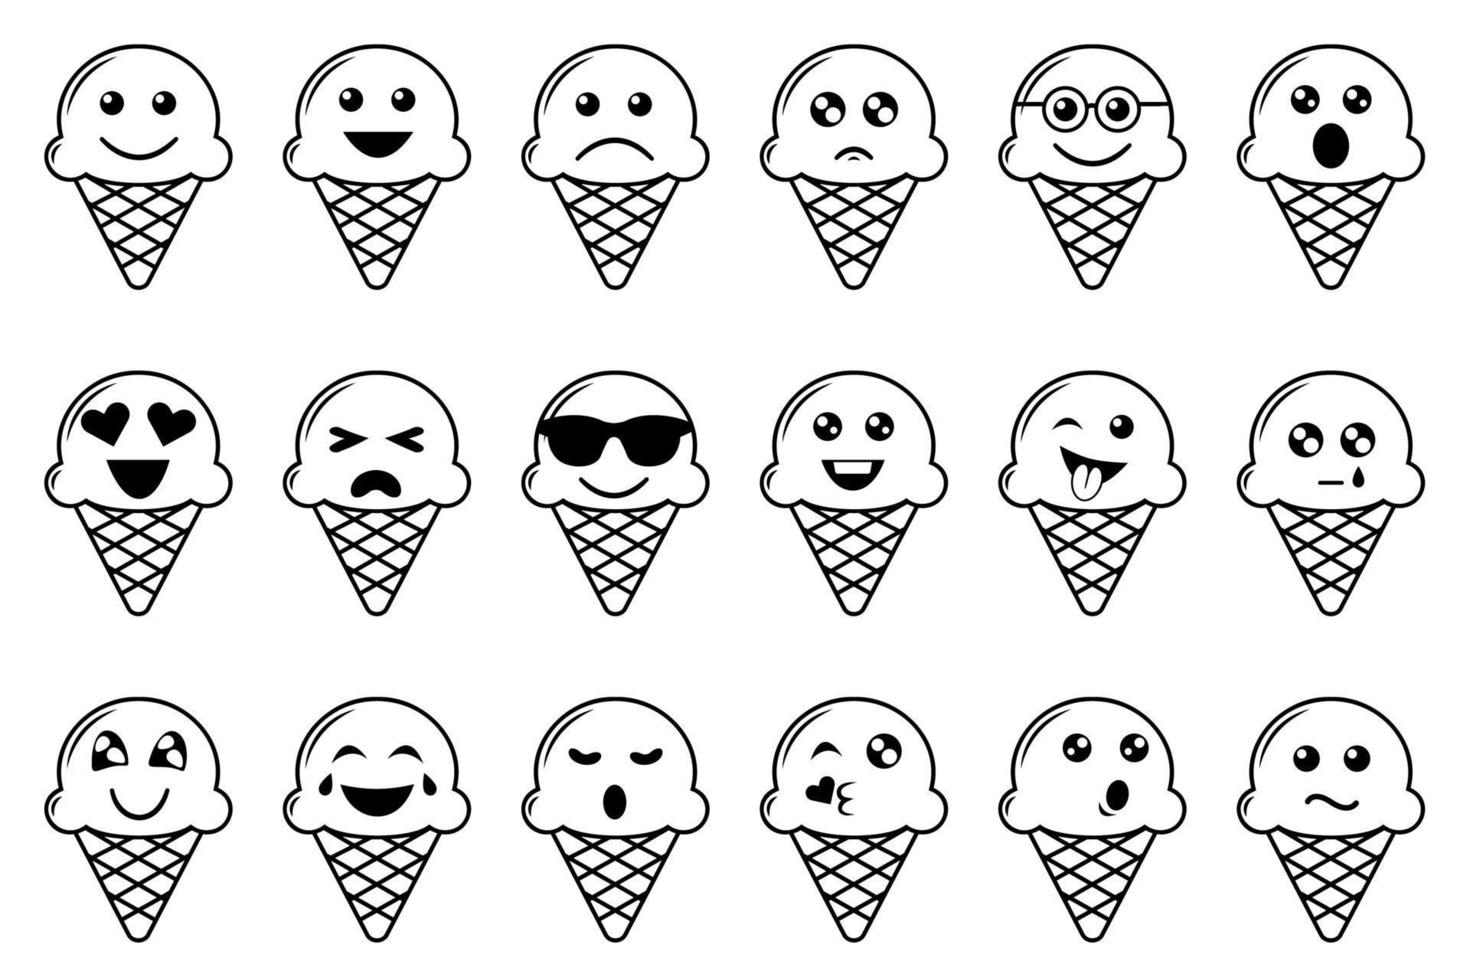 ijs vector emoticons set. collectie van wafel kegel ijs collectie met zwarte dunne lijn geïsoleerd op een witte achtergrond.